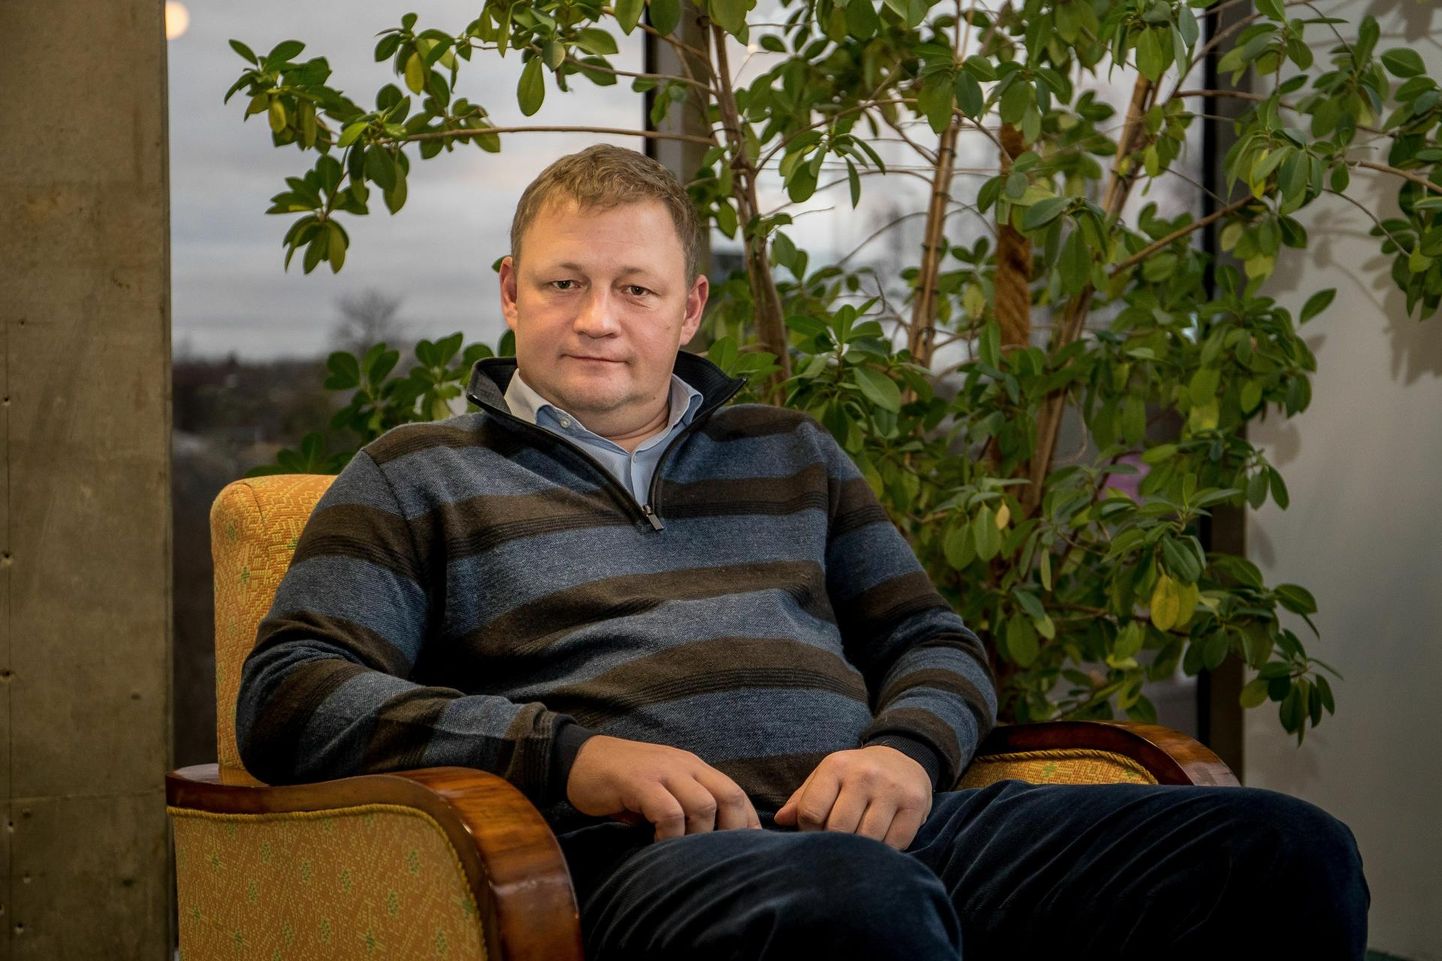 Raul Kirjaneni osalusega Graanuli grupi käes on Eestis kõige rohkem erametsa.